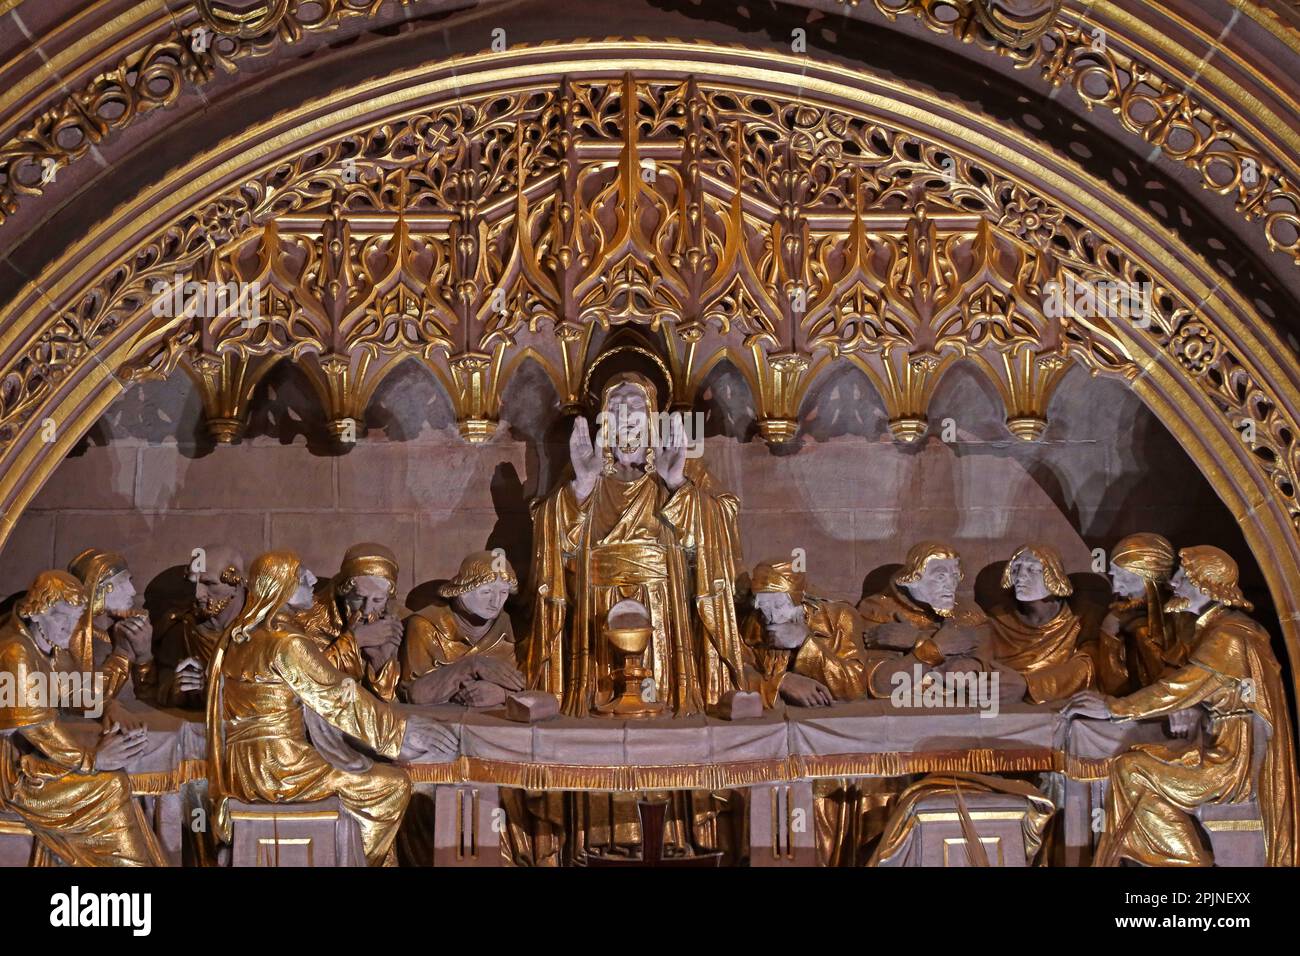 Dernière frise du souper, sur le haut autel de la cathédrale anglicane, le mont St James, Liverpool , Merseyside, Angleterre, ROYAUME-UNI, L1 7AZ Banque D'Images